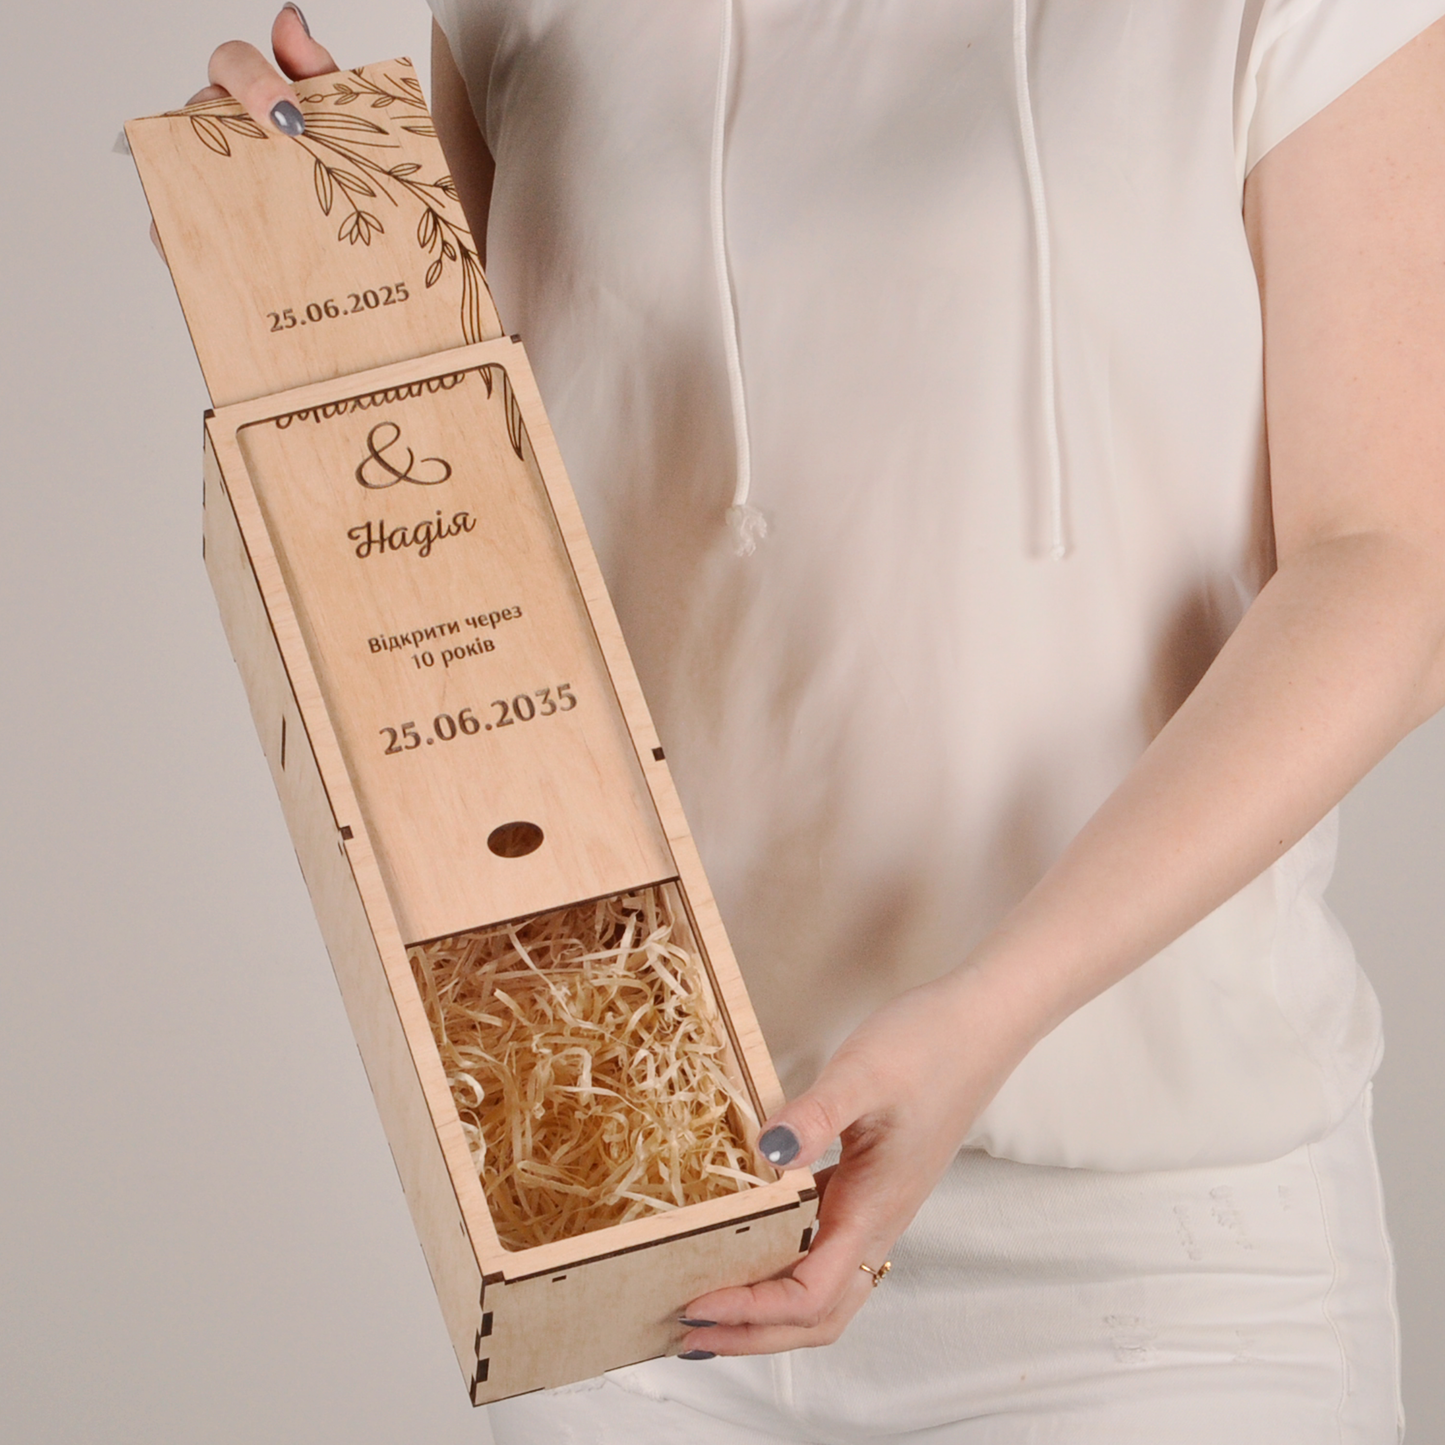 Подарункова дерев'яна коробка для шампанського al208